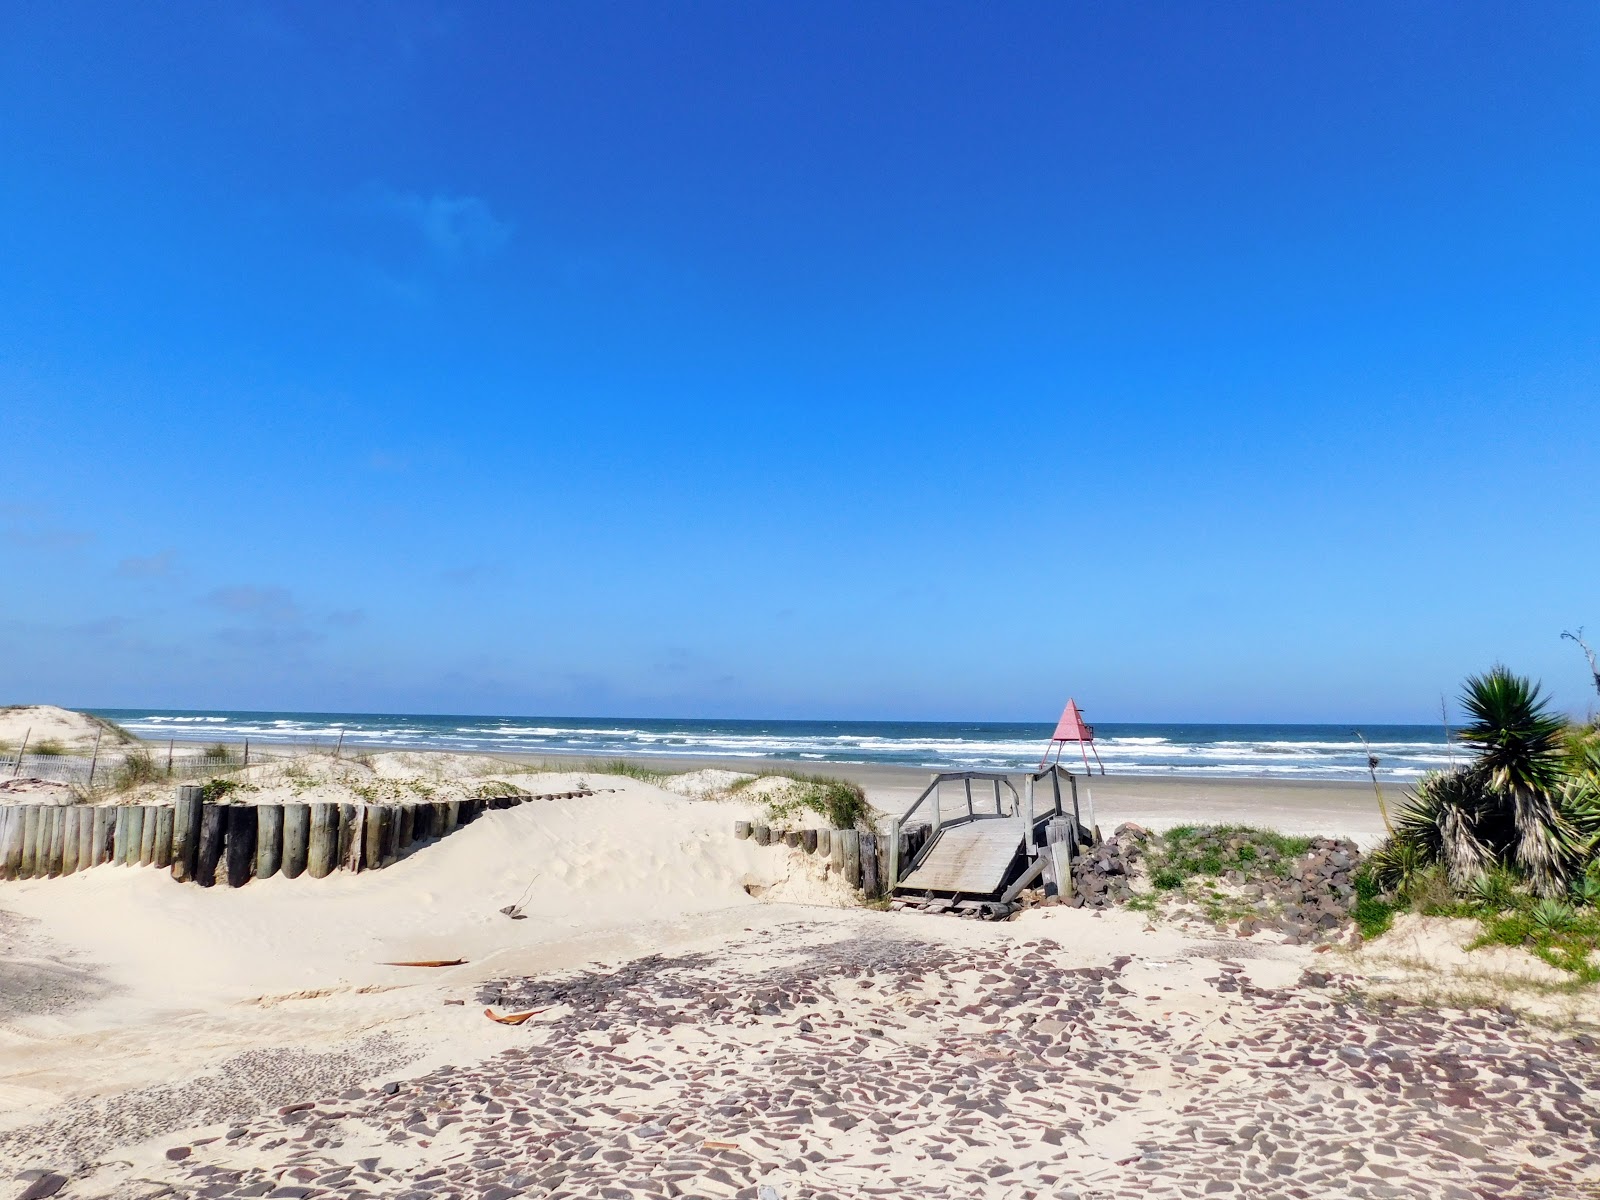 Praia Maristela的照片 具有非常干净级别的清洁度